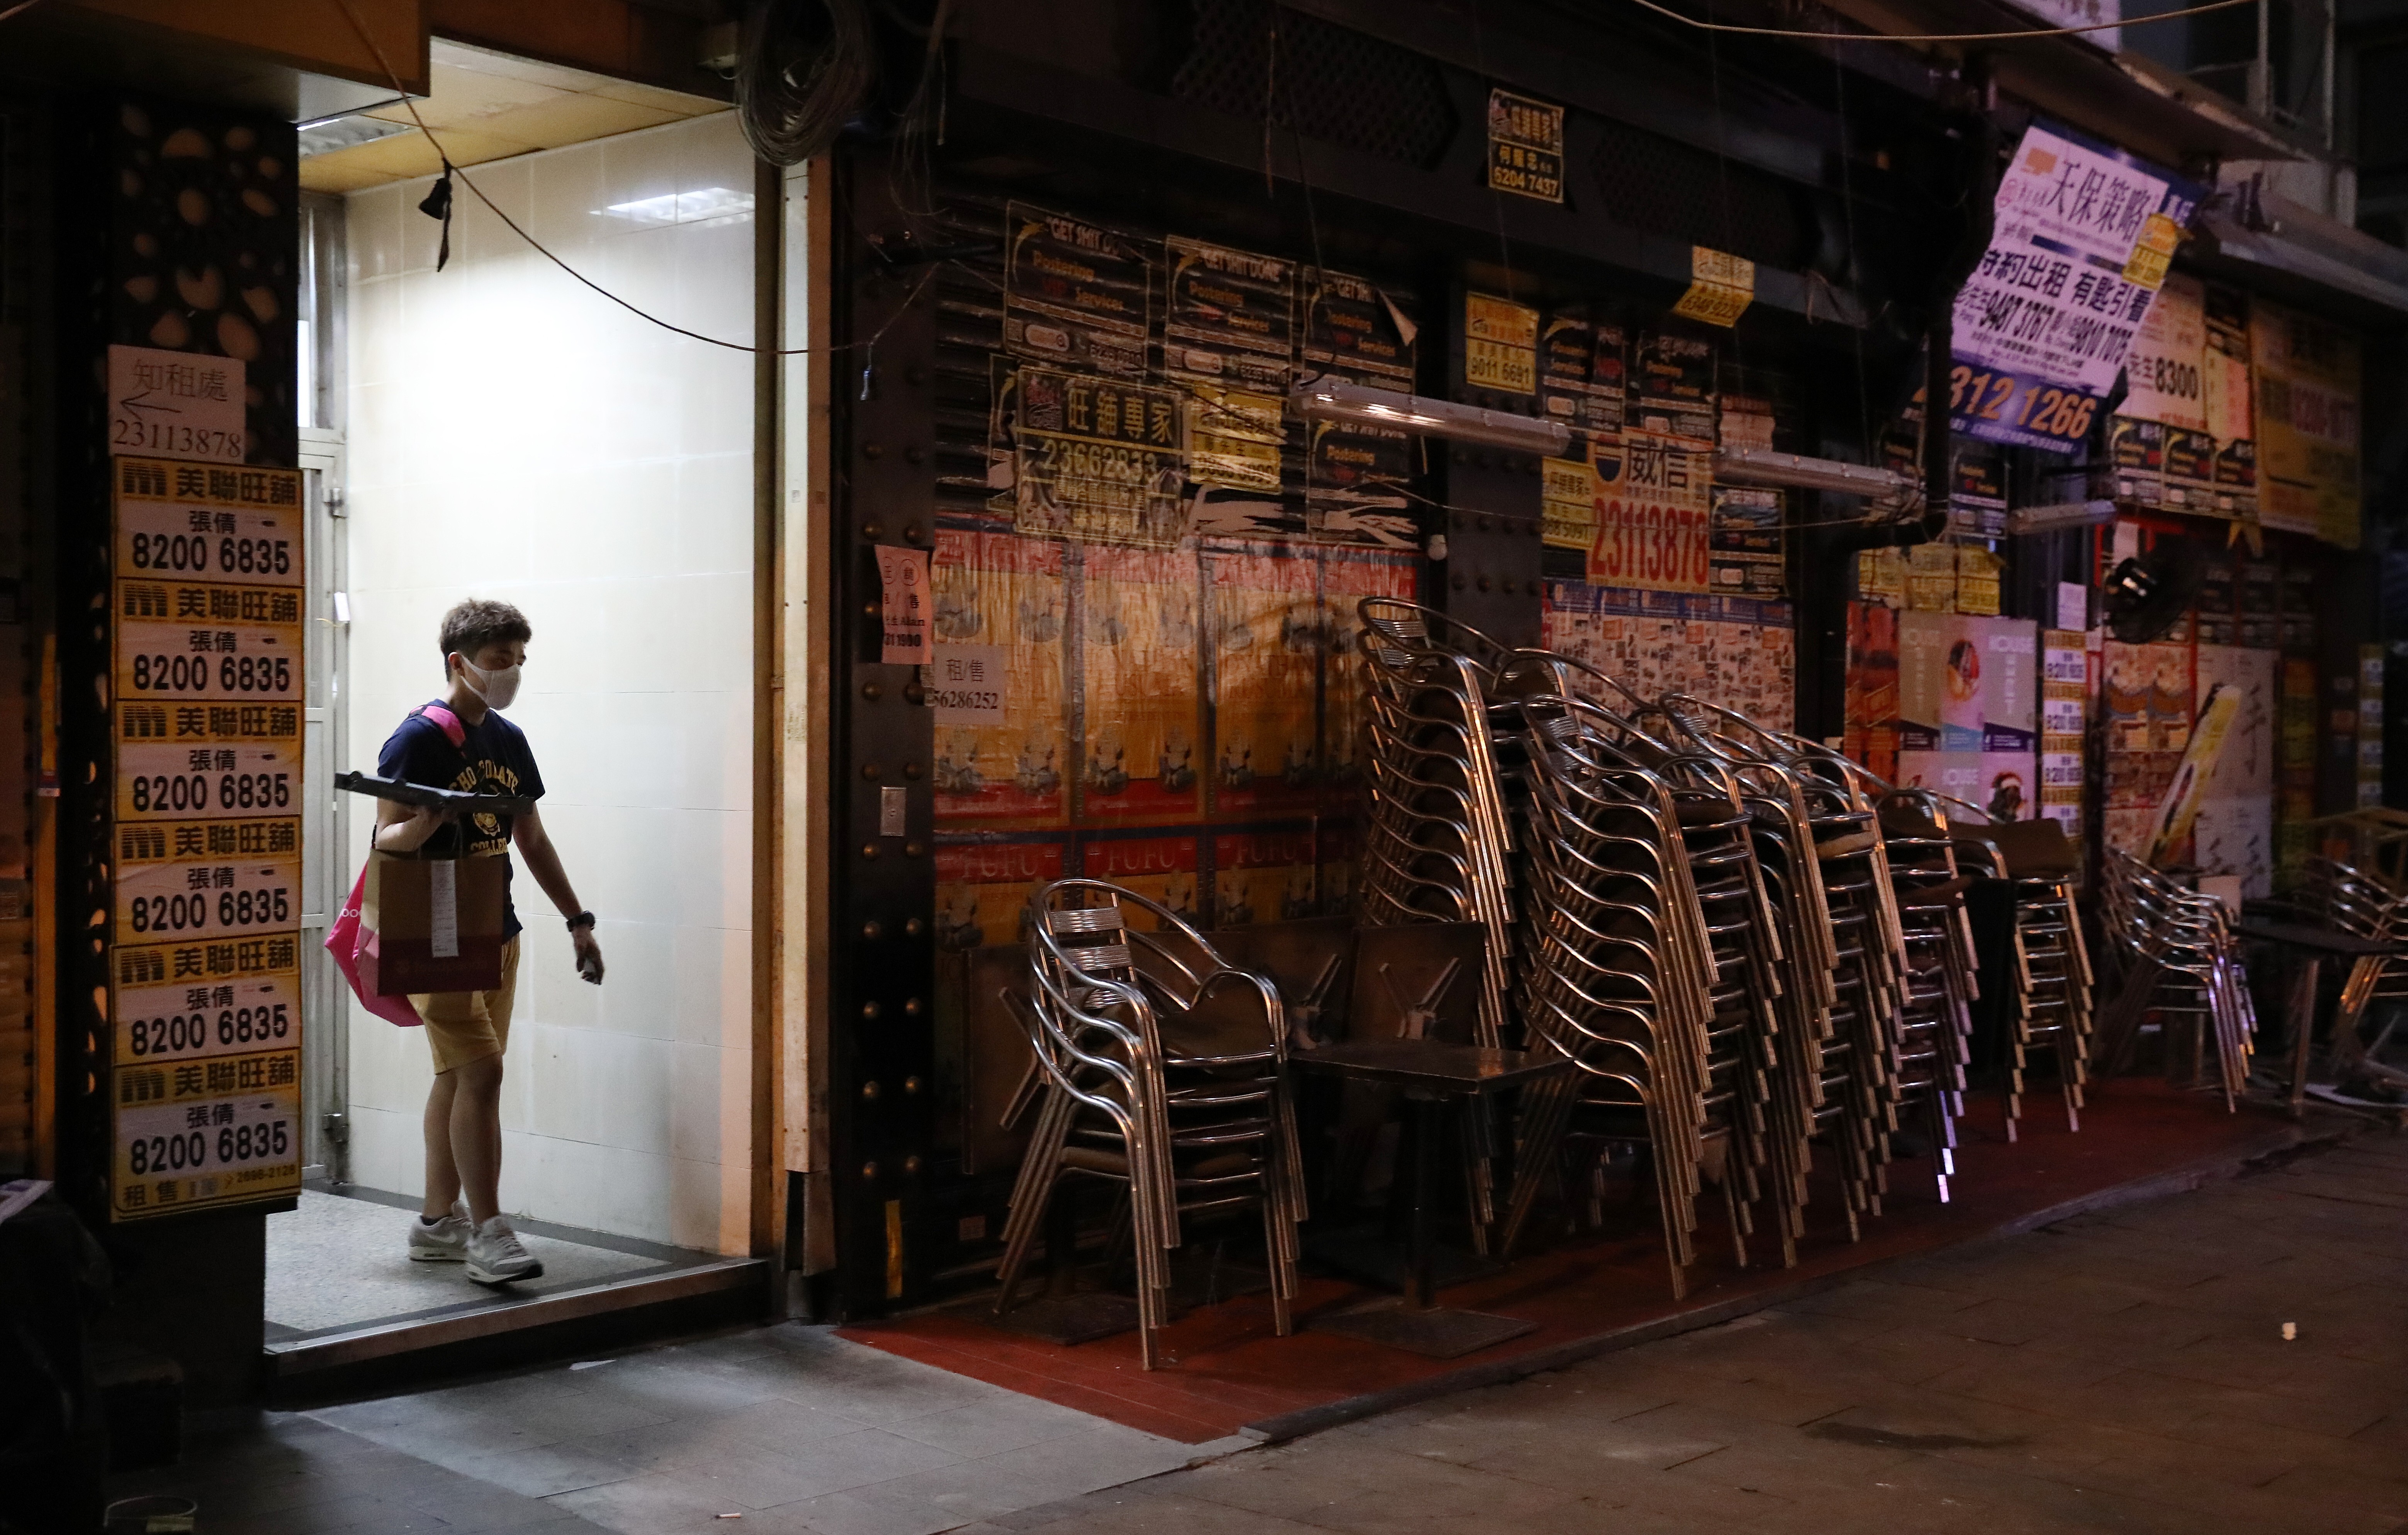 Bars have closed down in the Hong Kong nightlife hub of Lan Kwai Fong. Photo: Nora Tam